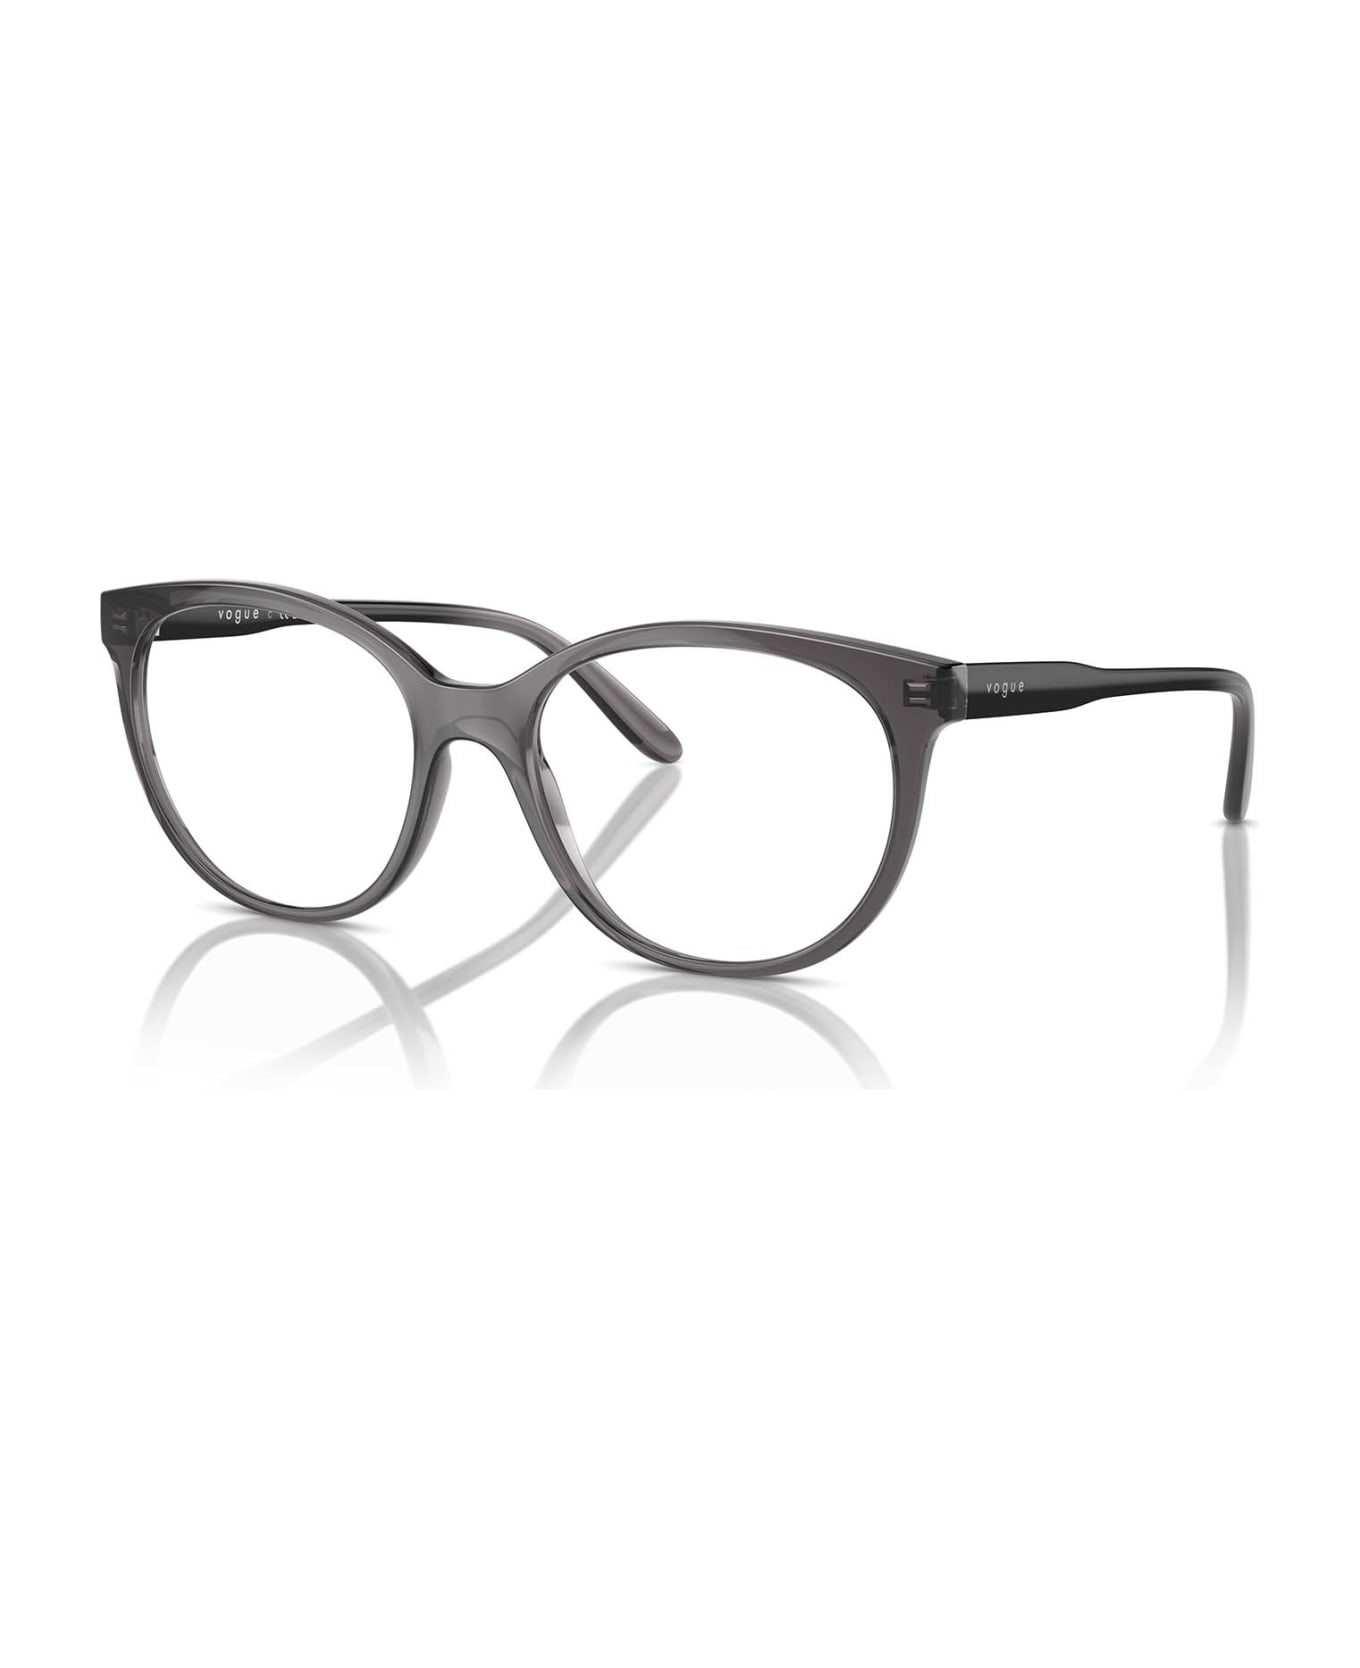 Vogue Eyewear Vo5552 Transparent Dark Grey Glasses - Transparent Dark Grey